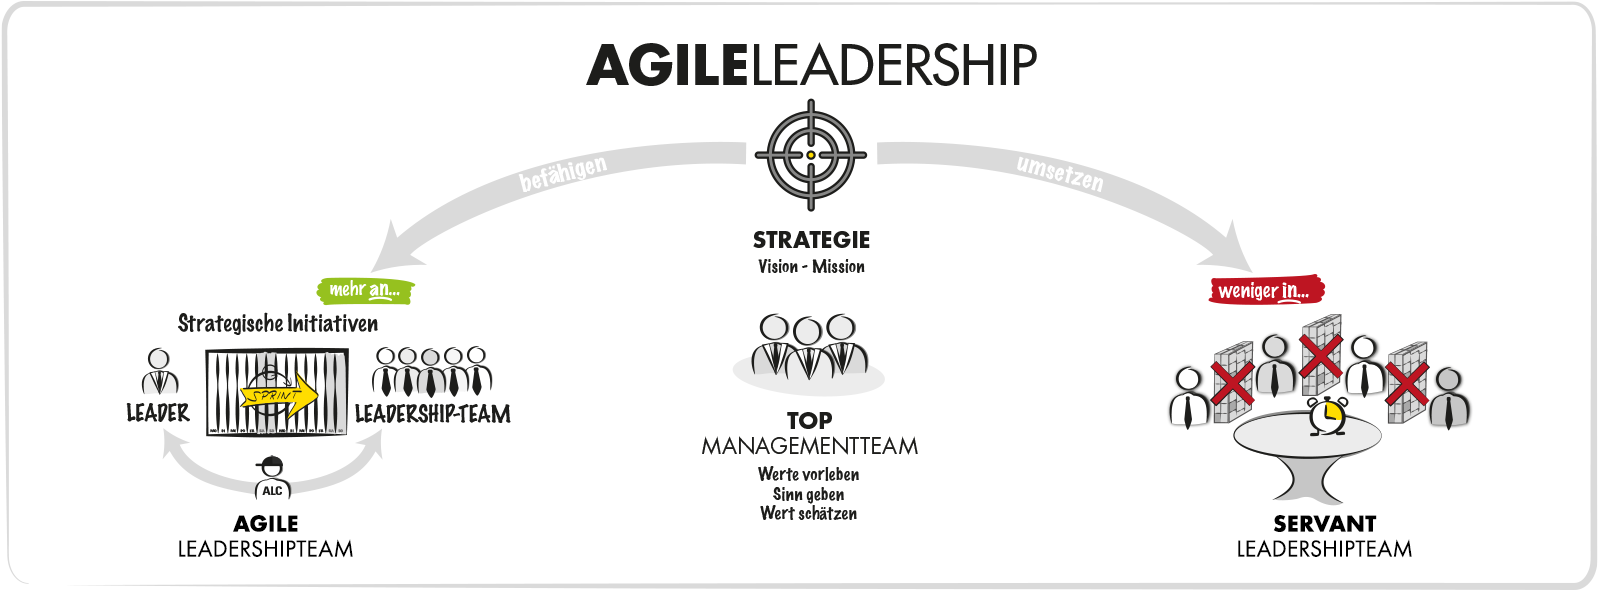 AGILE TRANSITION - Agile Leadership